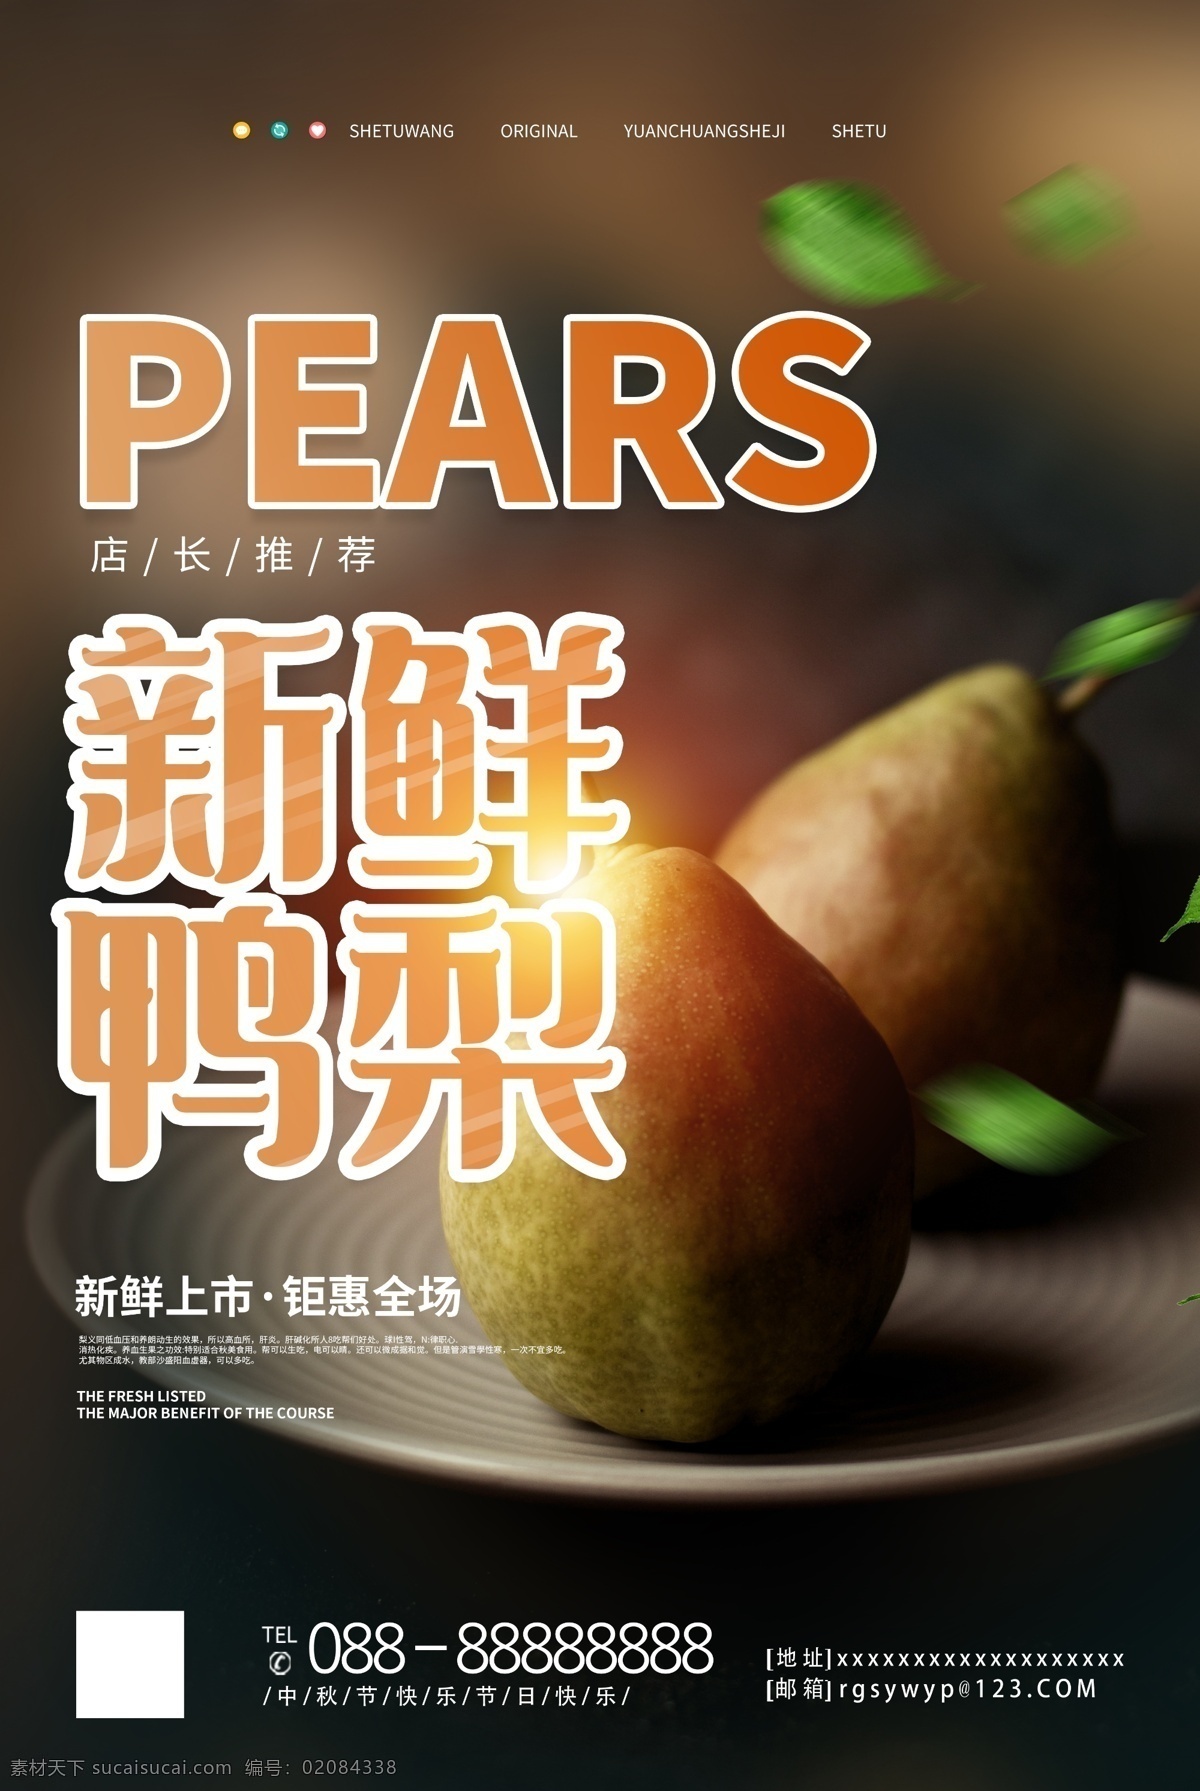 新鲜 水果 鸭梨 促销 宣传海报 粮油 超市 生鲜 调料 蔬菜 保鲜 美味 章 油